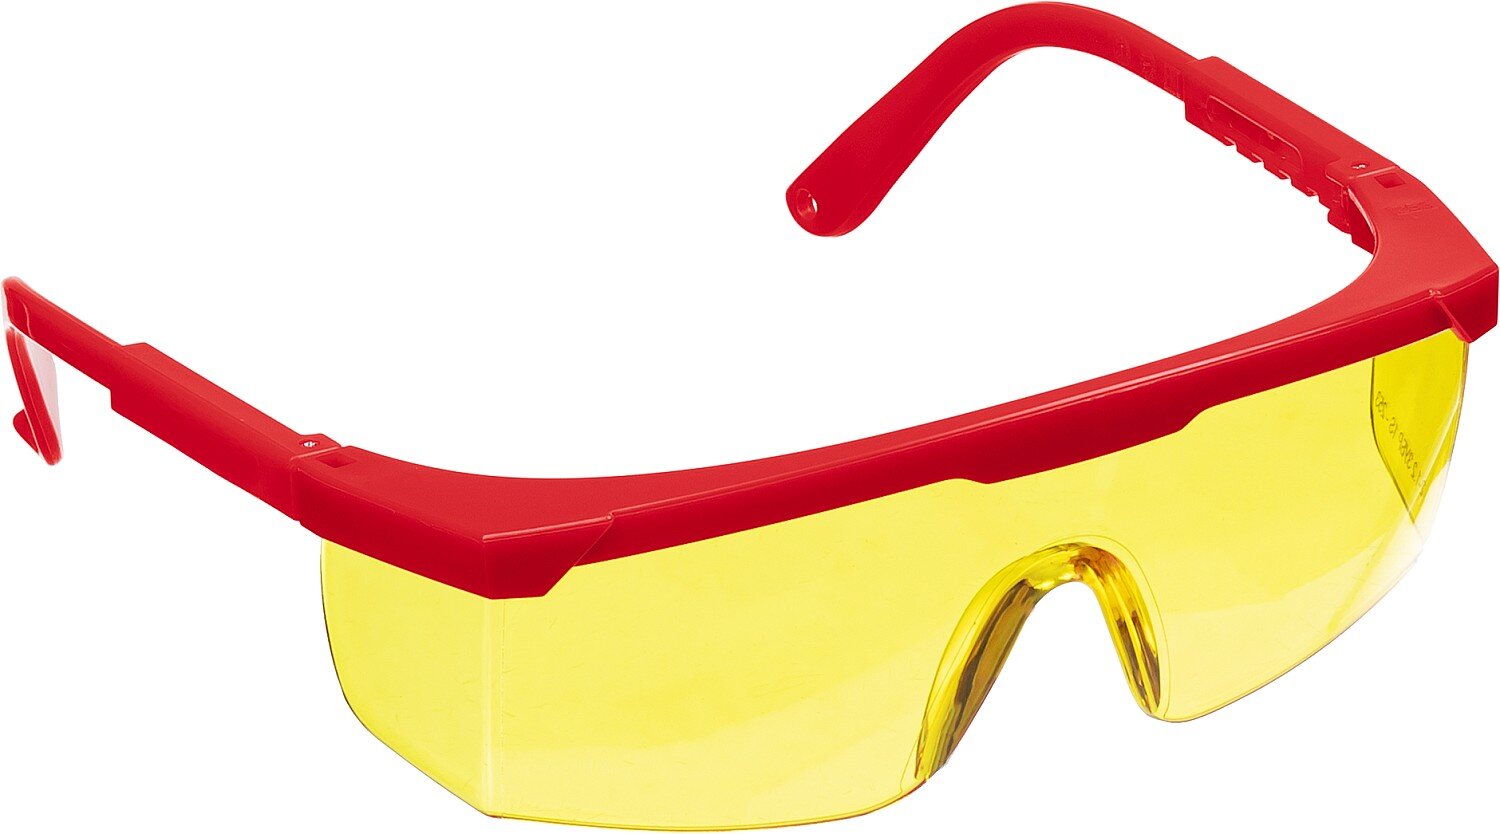 Защитные жёлтые очки Зубр Спектр 5 110329 монолинза с дополнительной боковой защитой, открытого типа deltaplus очки lipari2 clear открытые защитные с боковой защитой